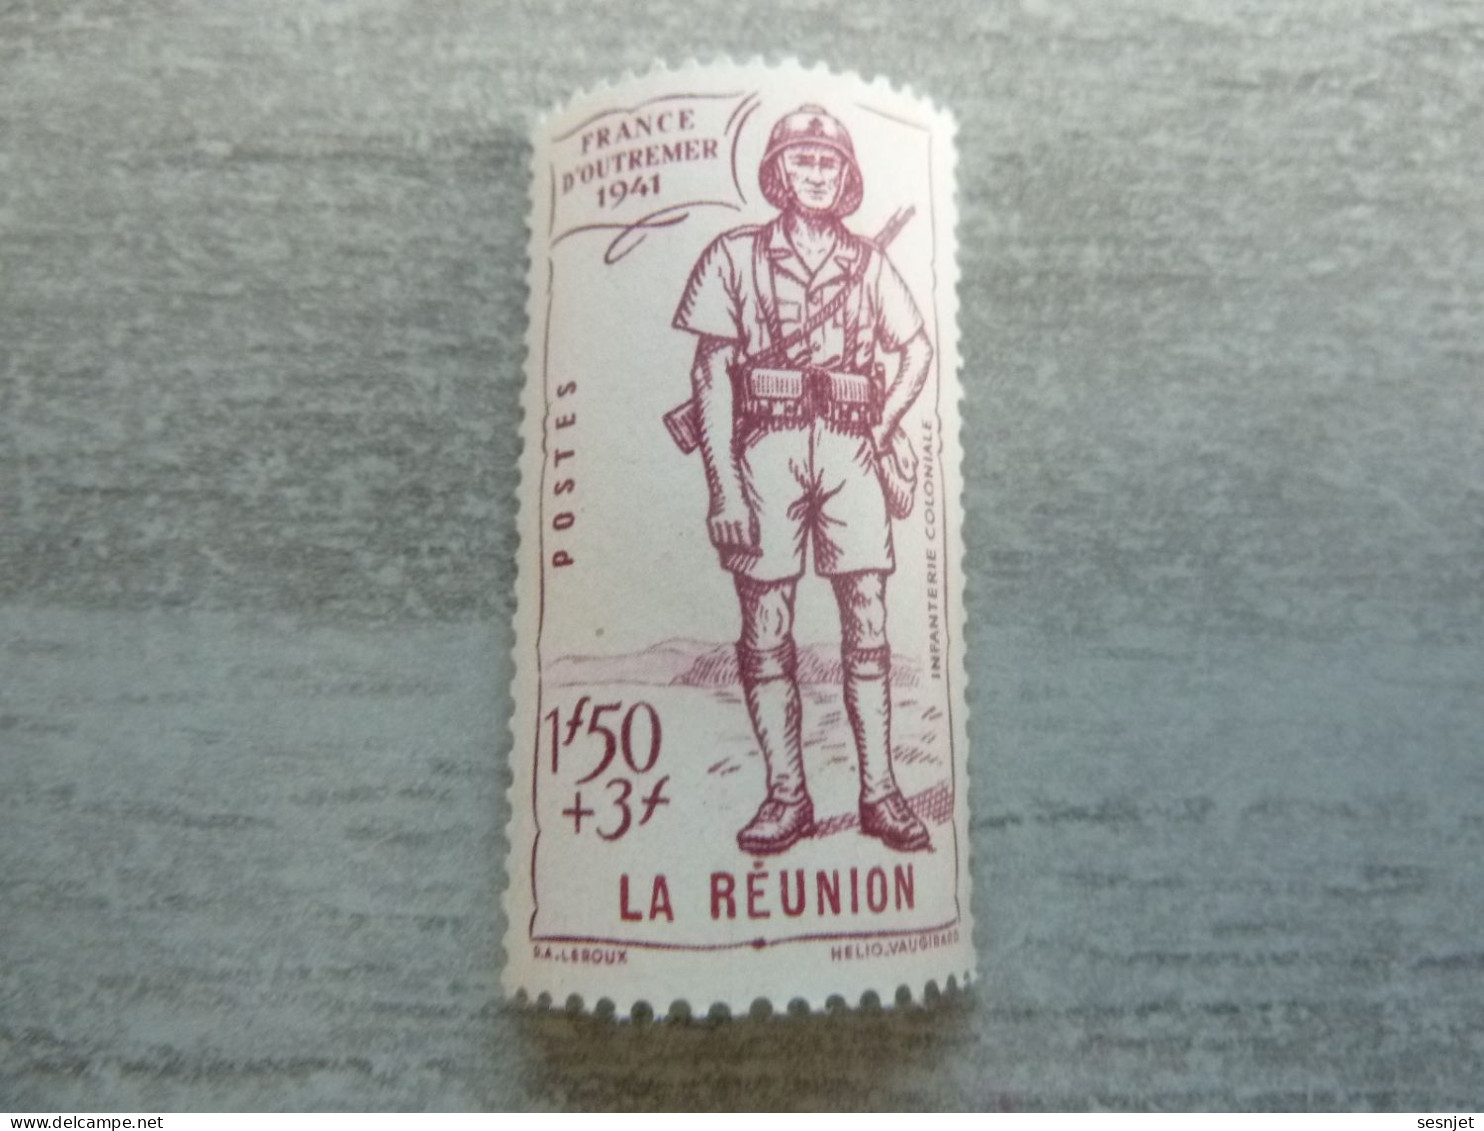 La Réunion - Défense Empire - Infanterie Coloniale - 1f.50+3f -  Yt 176 - He. Vaugirard - Lilas - Neuf - Année 1941 - - Nuevos